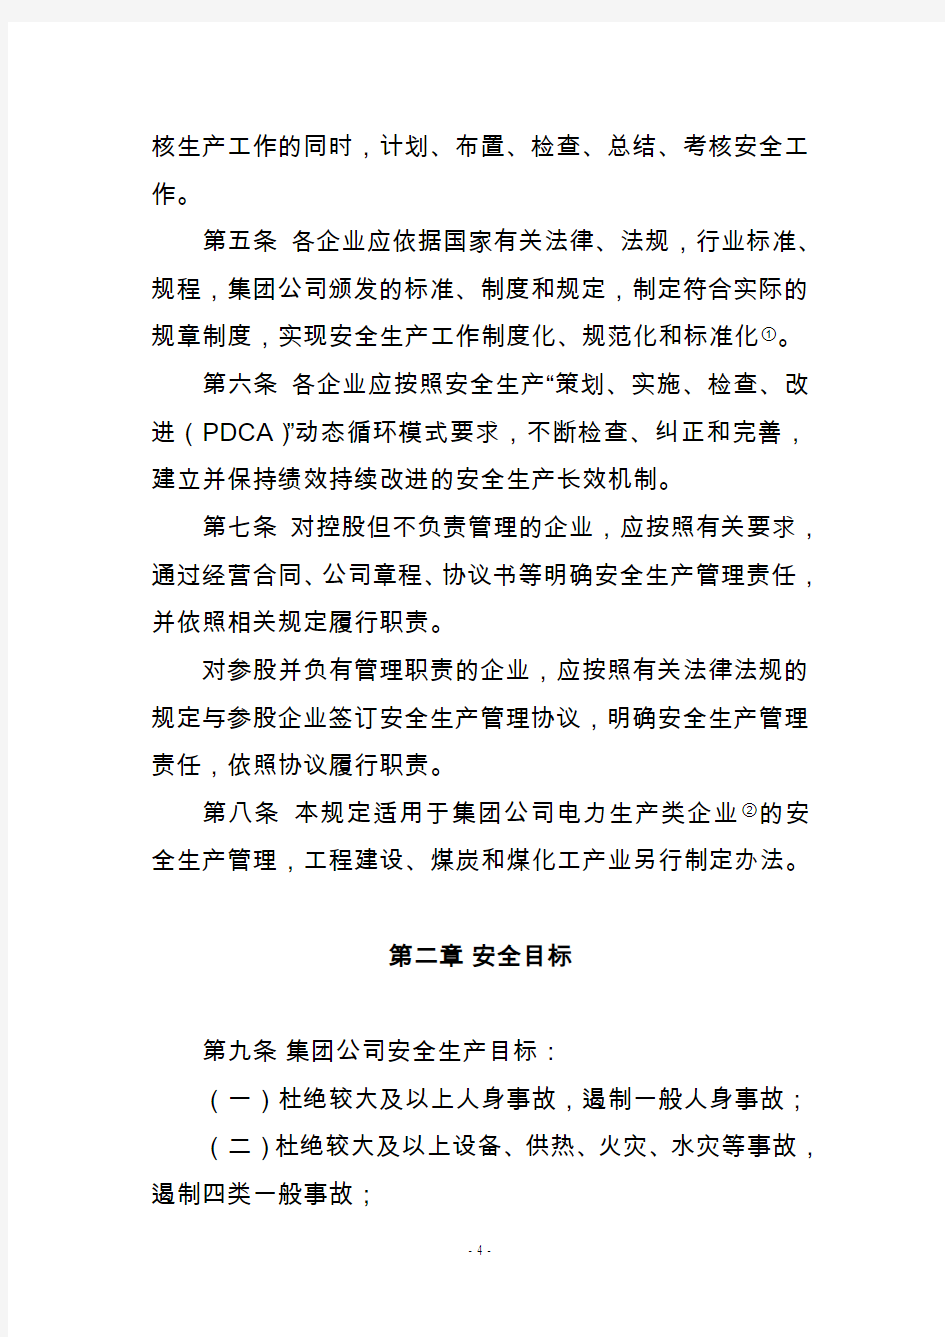 中国华电集团公司电力安全生产工作规定